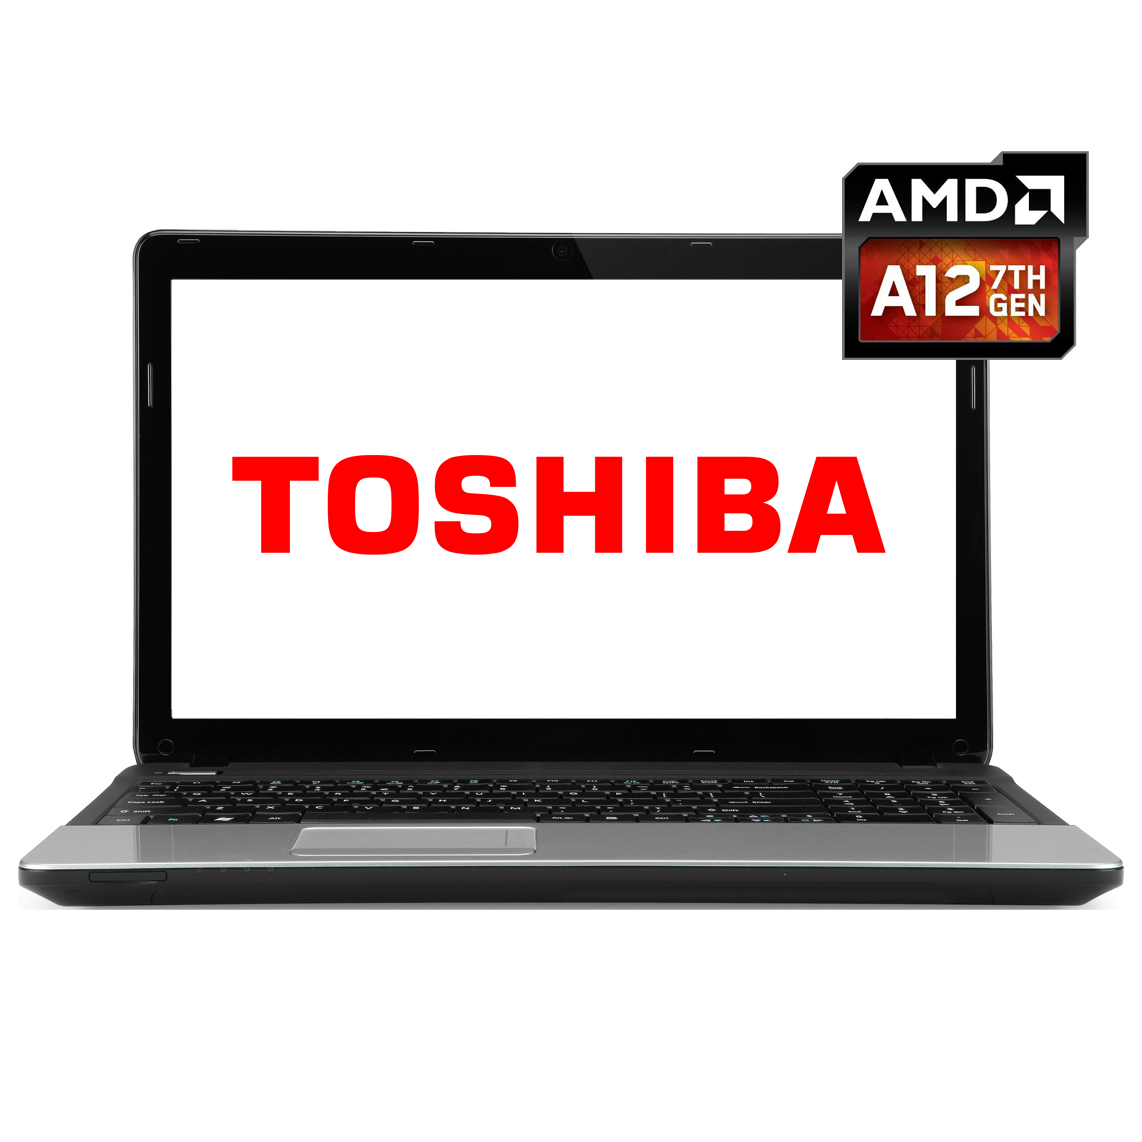 Toshiba - 17.3 inch AMD A12